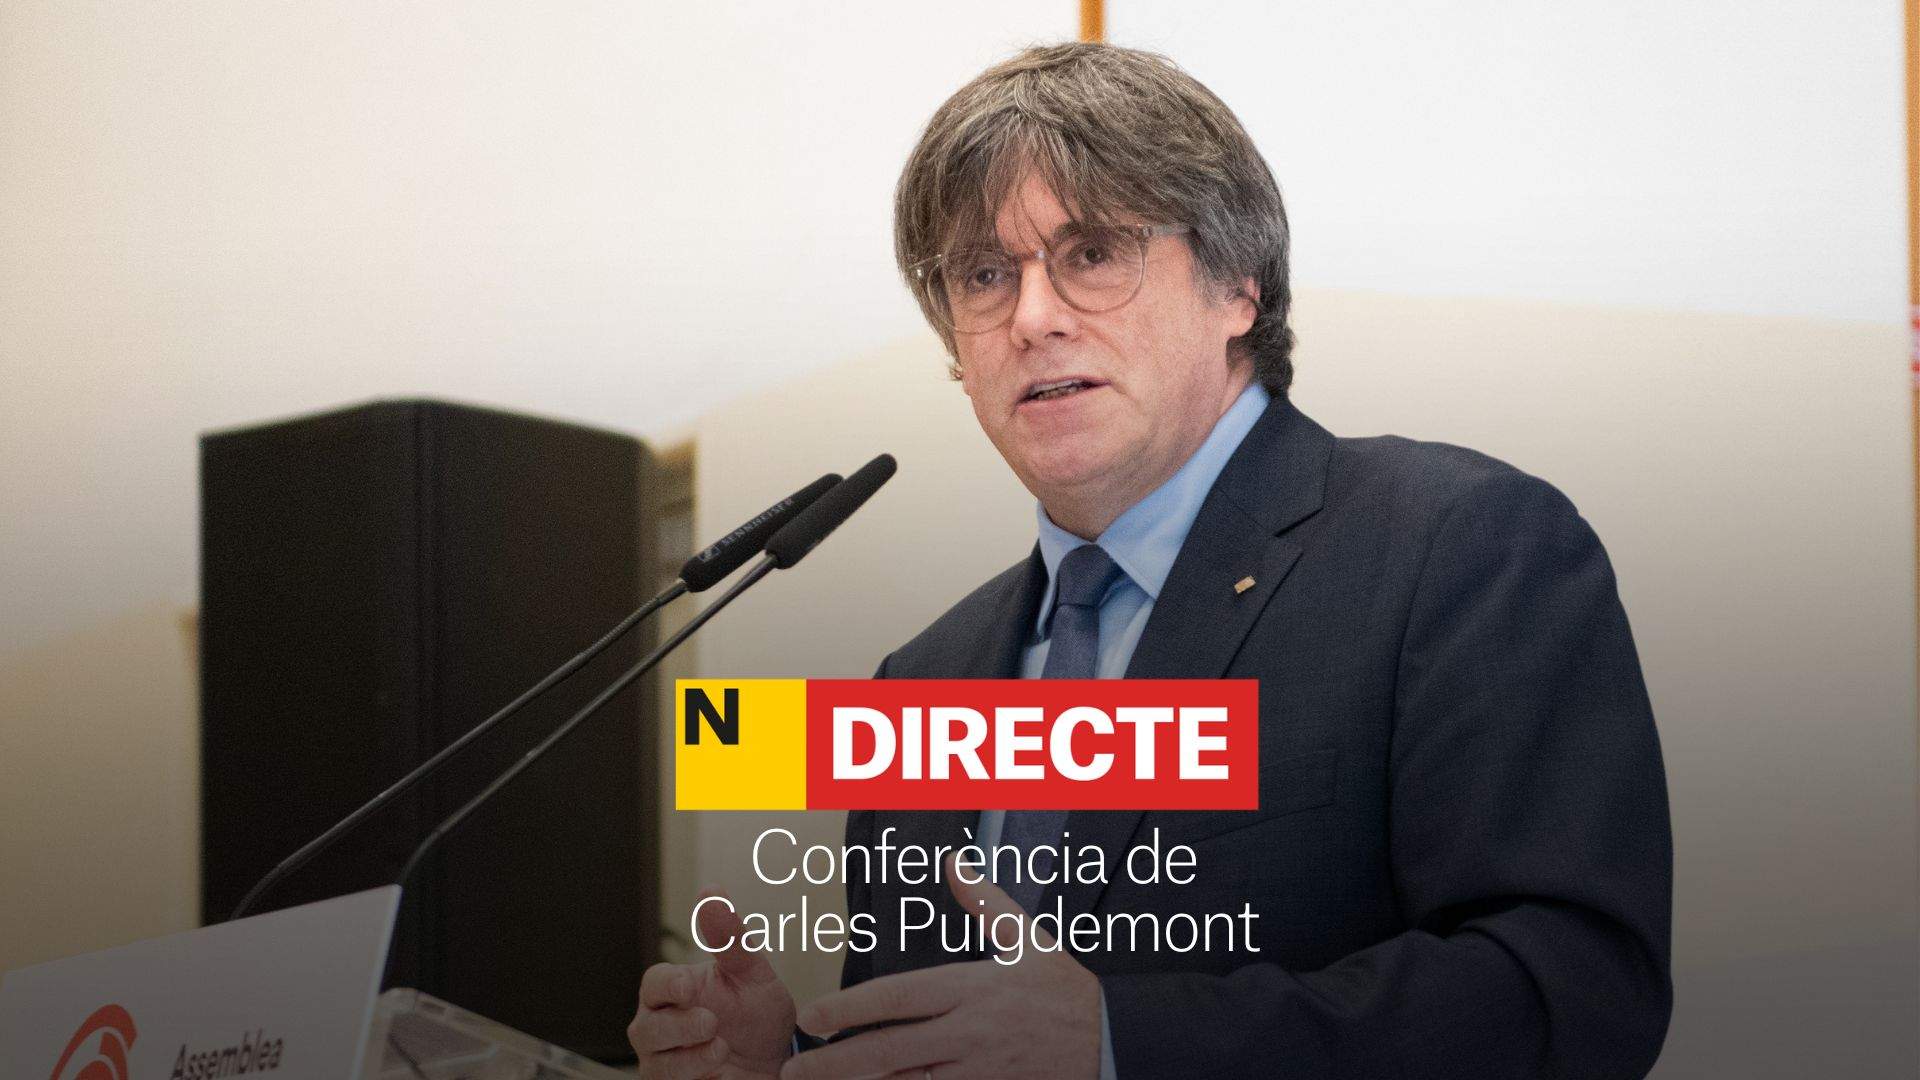 Puigdemont anuncia que serà candidat a les eleccions catalanes, DIRECTE | Última hora i reaccions